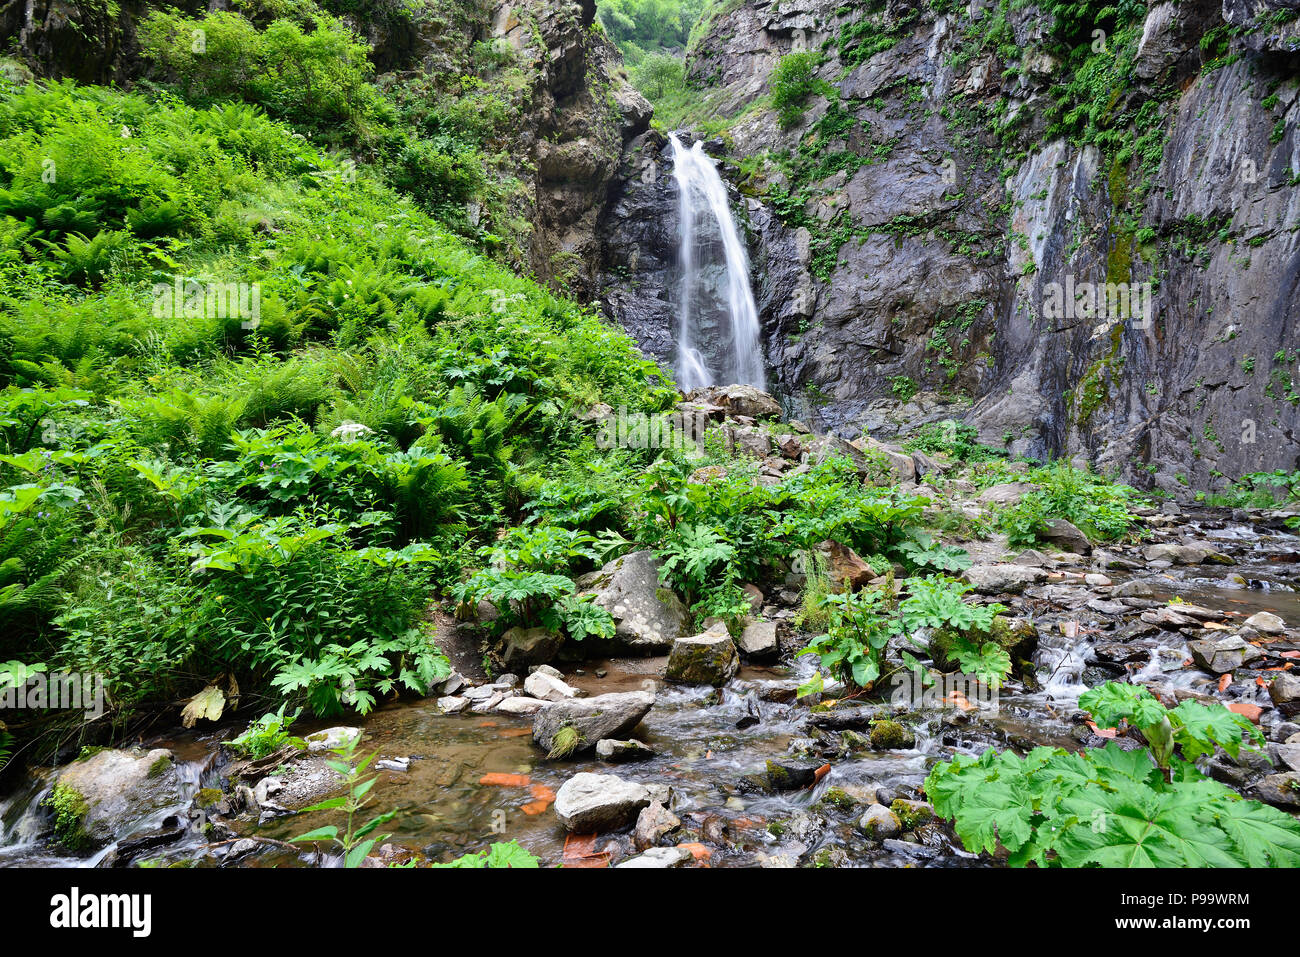 Gveleti petites chutes d'être dans une gorge Dariali près de la ville de Kazbegi dans les montagnes du Caucase, Geprgia Banque D'Images